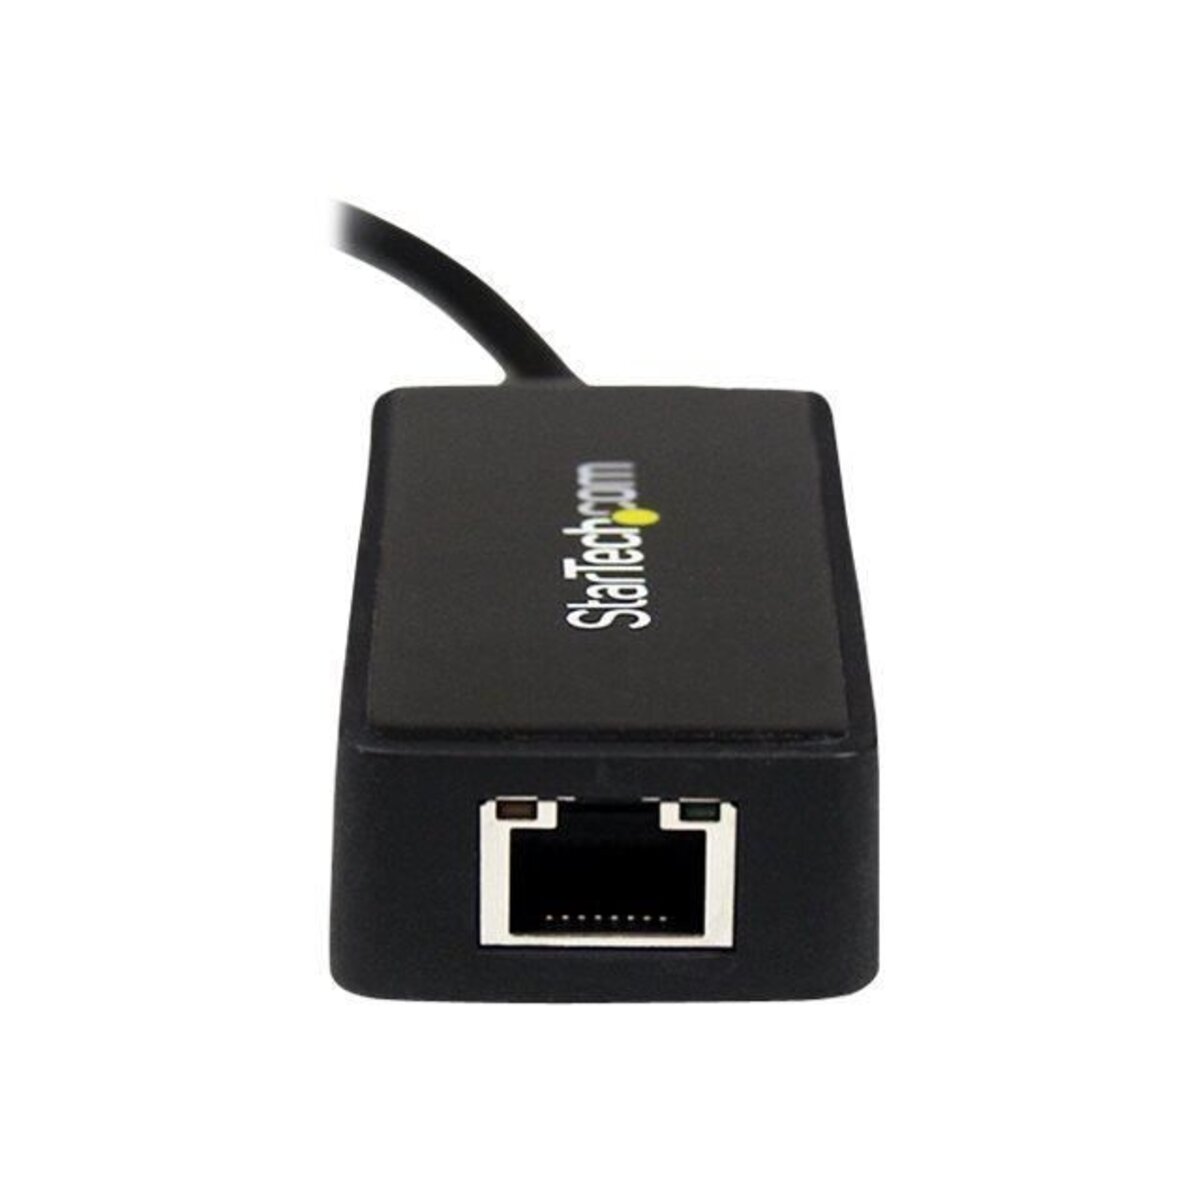 Adaptateur USB vers RJ45 (Adaptateur réseau USB 3.0 vers Gigabit